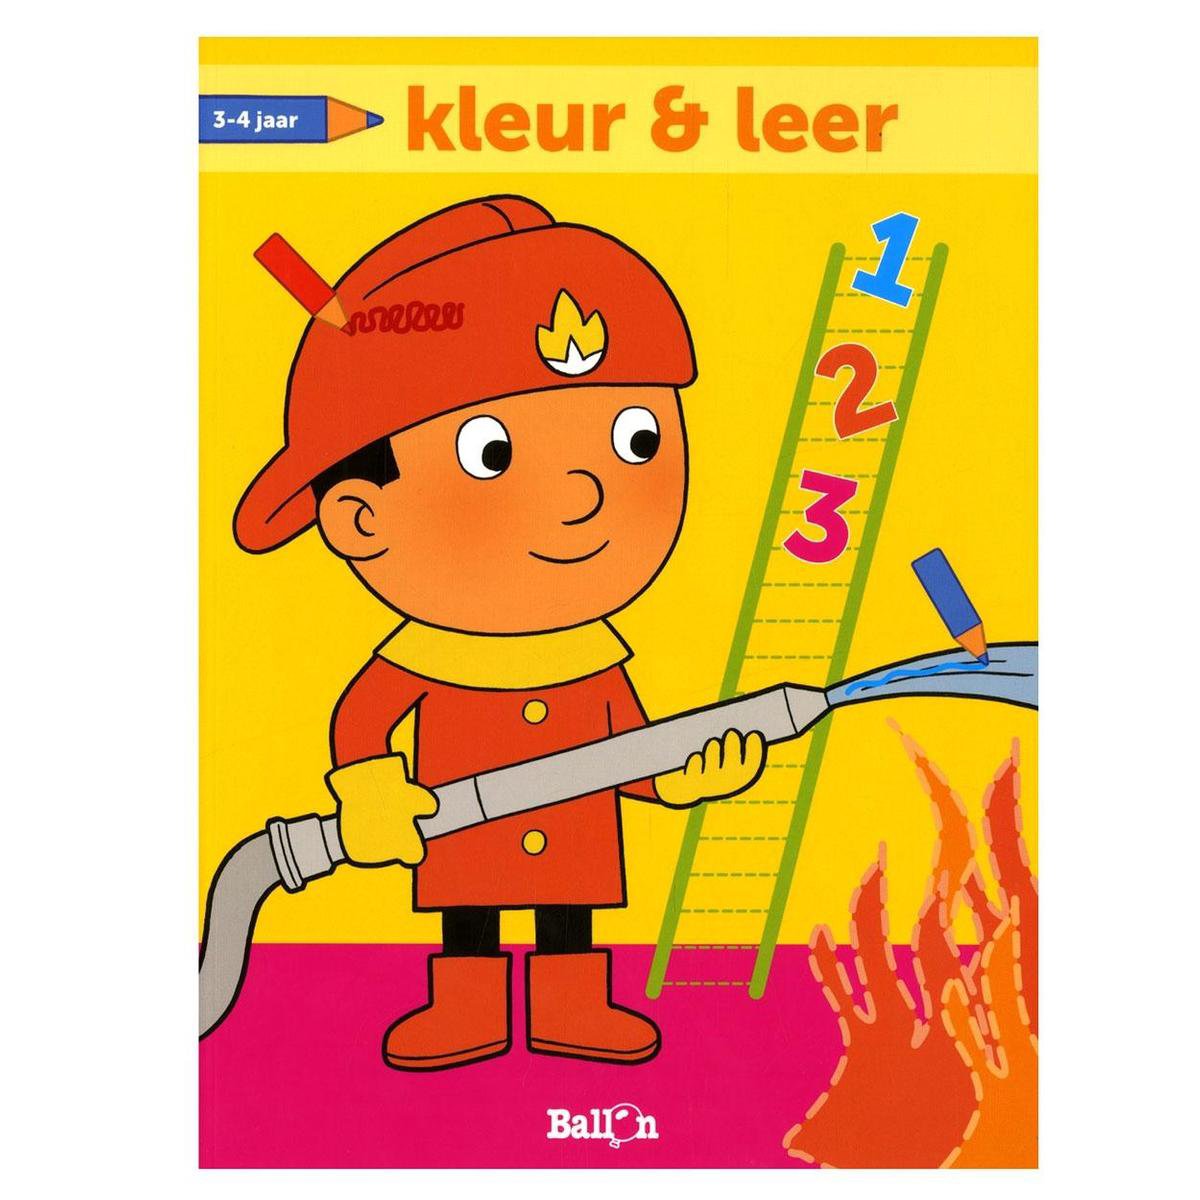 Kleur en leer (3-4 jaar) brandweerman